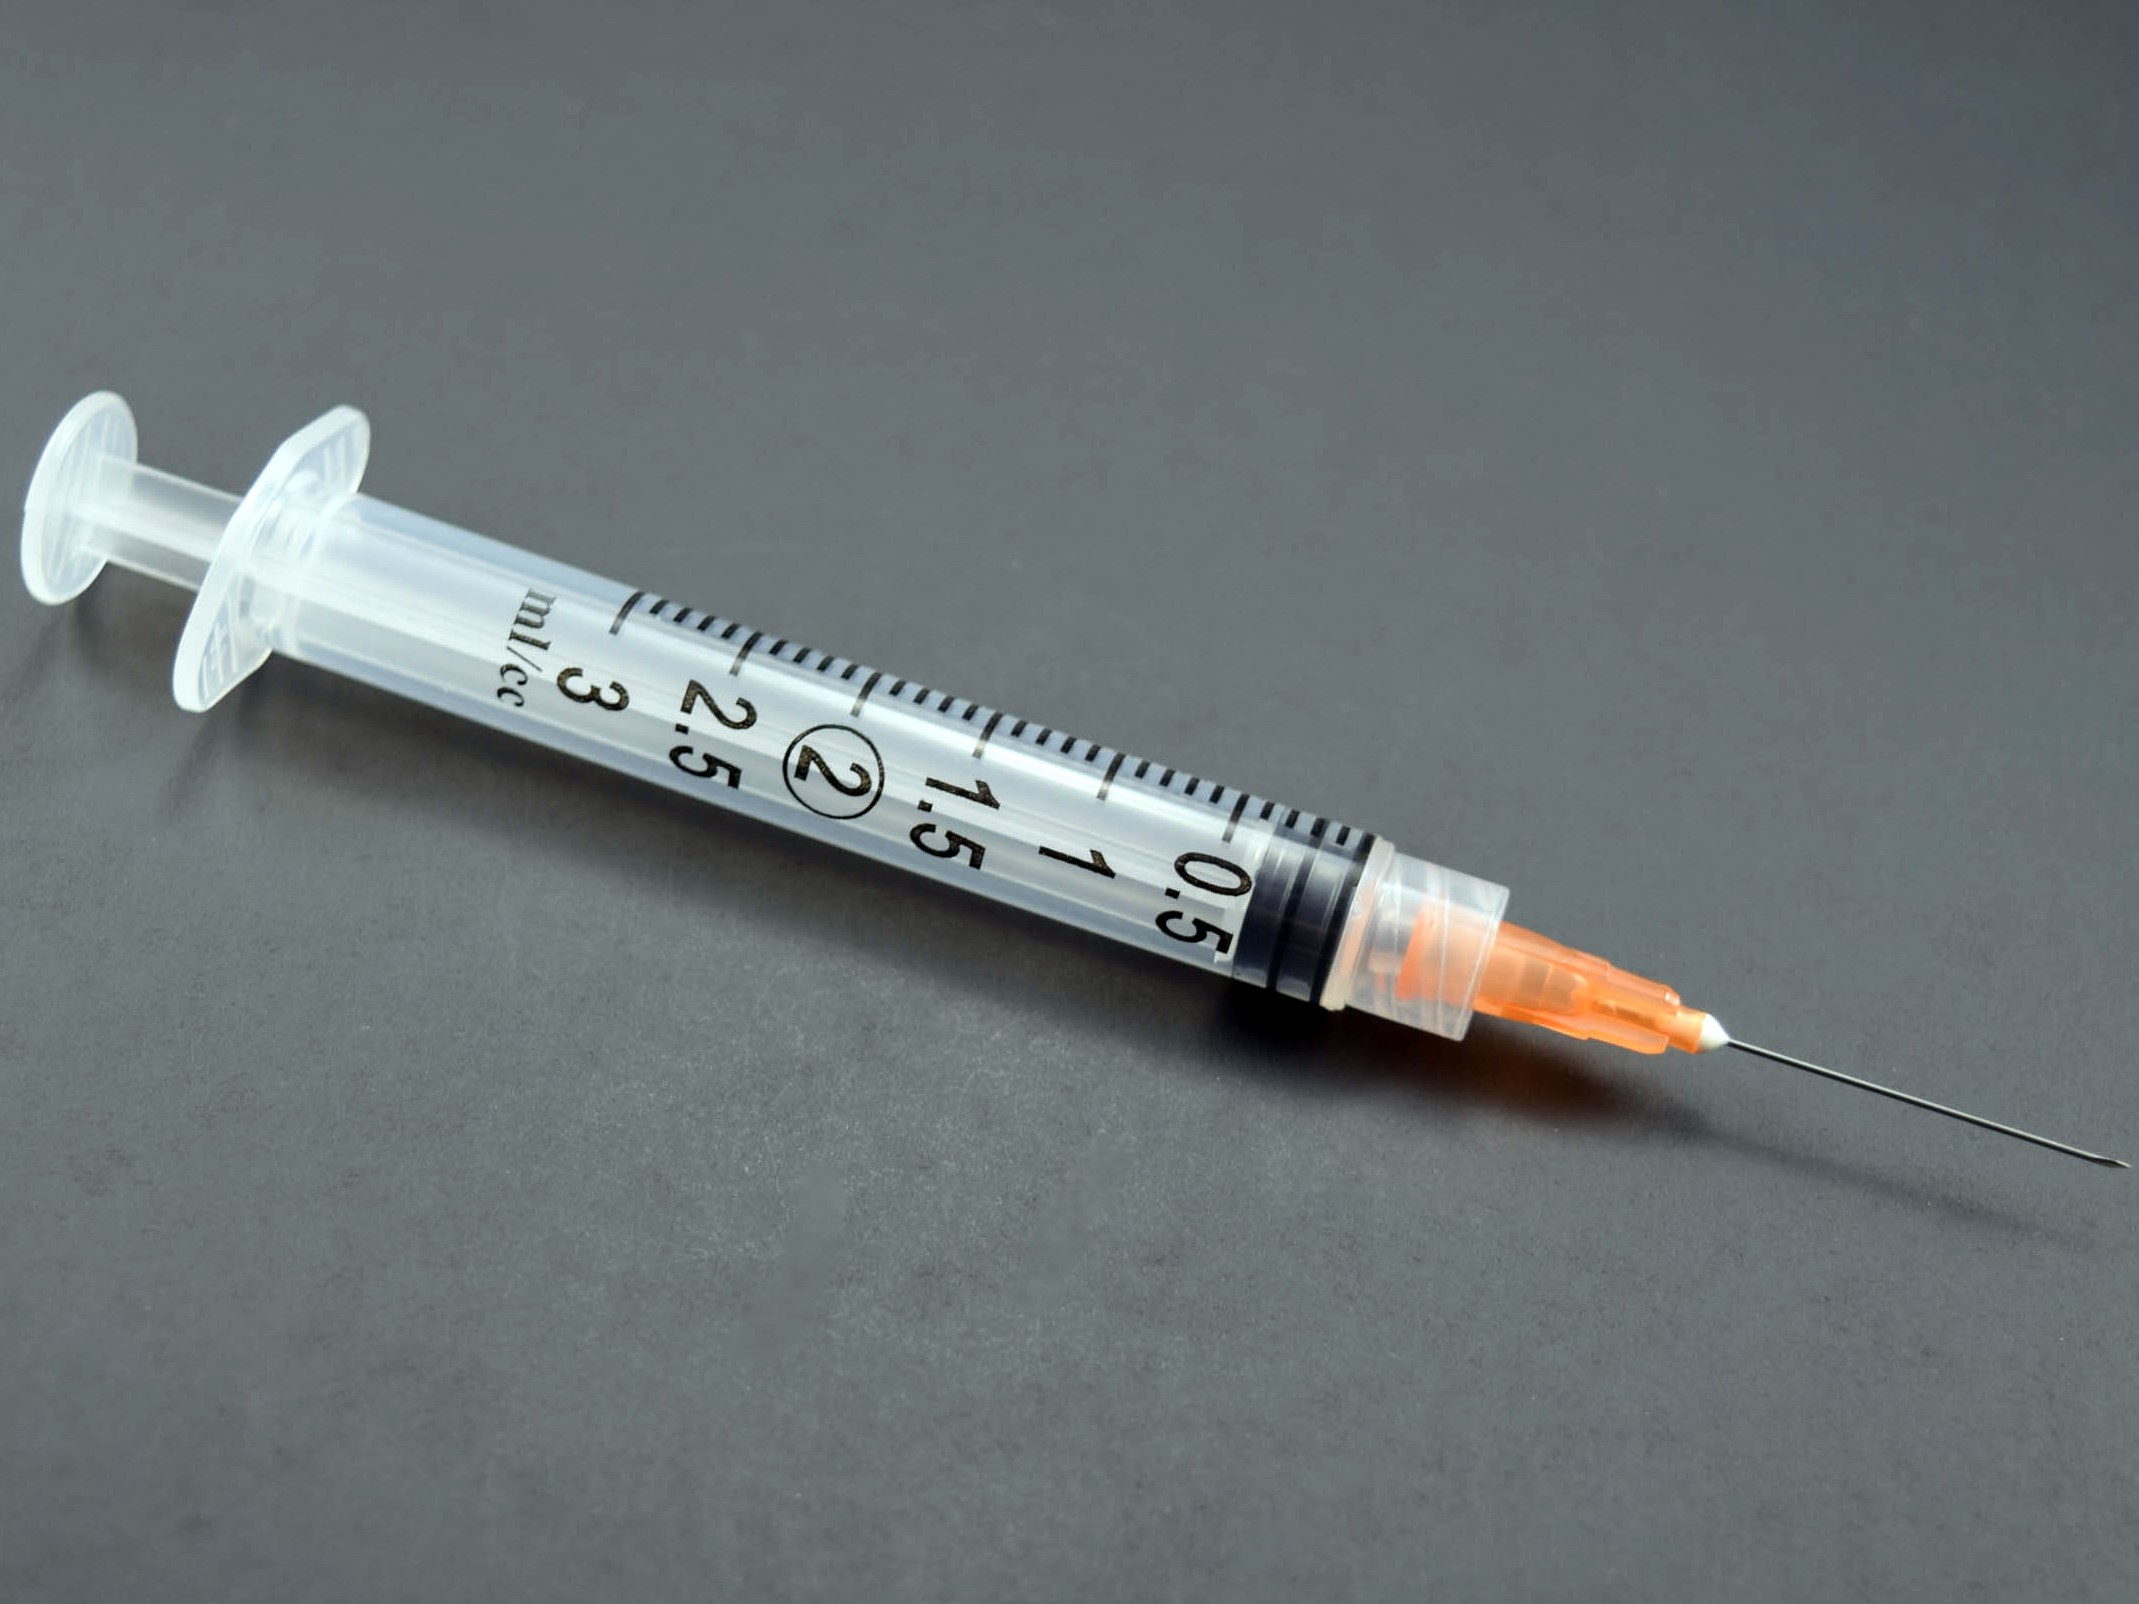 Syringe 3cc with Hypodermic Needle ExelInt® 3 mL .. .  .  